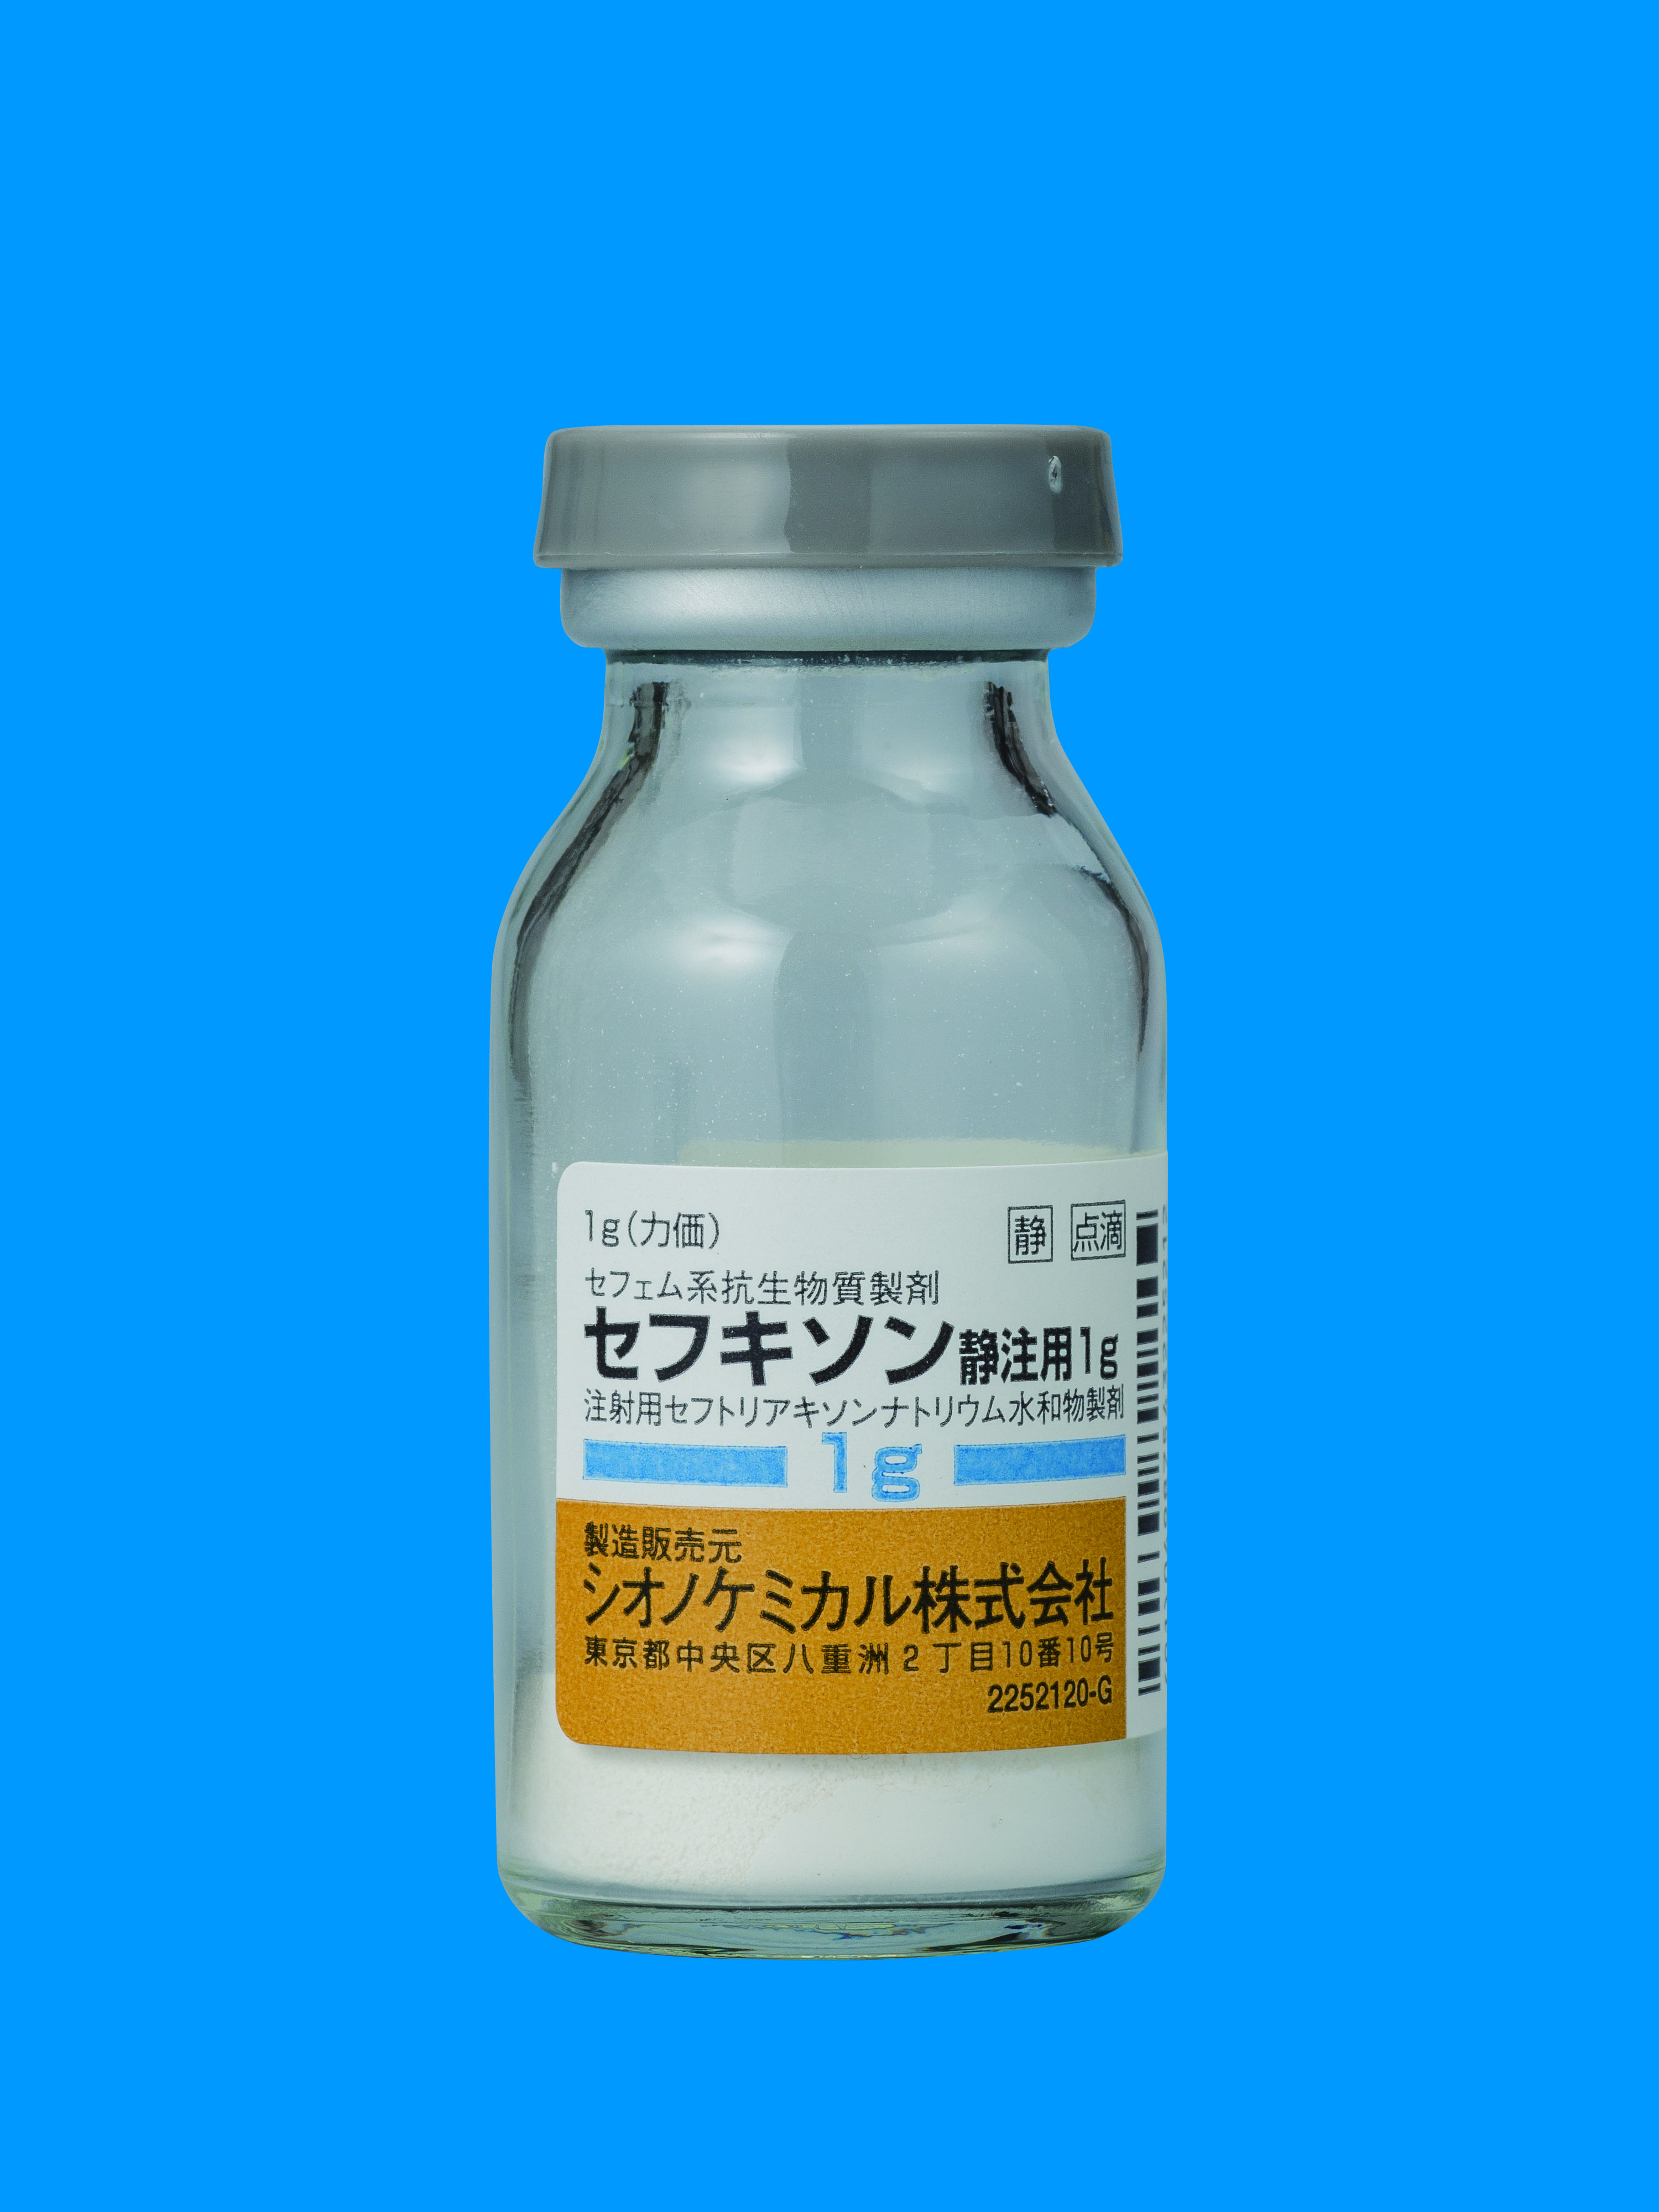 キソン セフト ナトリウム リア 医療用医薬品 :